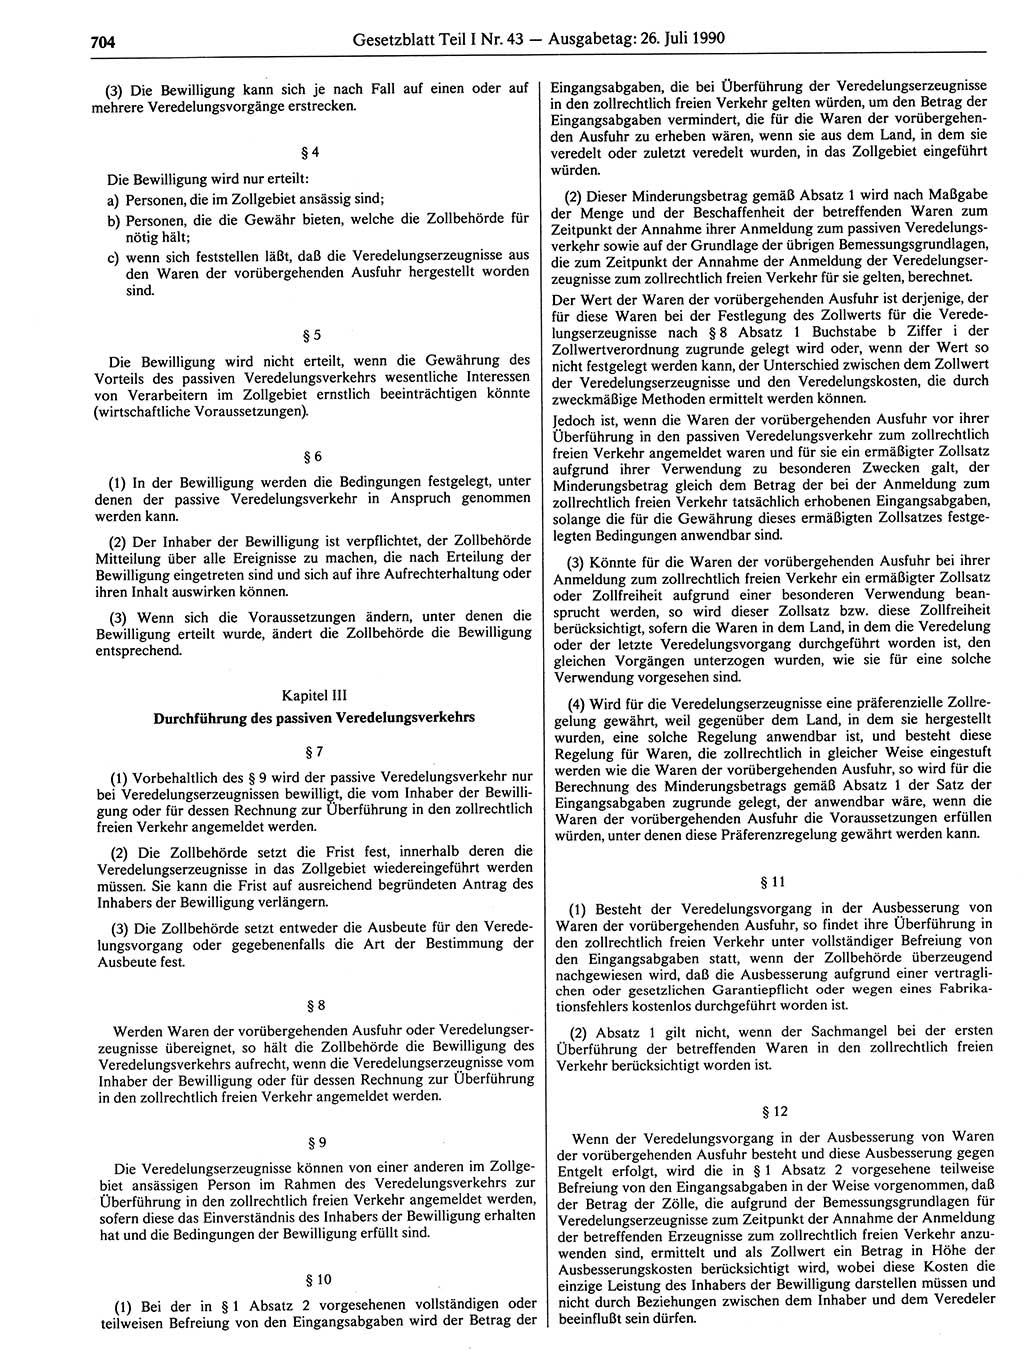 Gesetzblatt (GBl.) der Deutschen Demokratischen Republik (DDR) Teil Ⅰ 1990, Seite 704 (GBl. DDR Ⅰ 1990, S. 704)